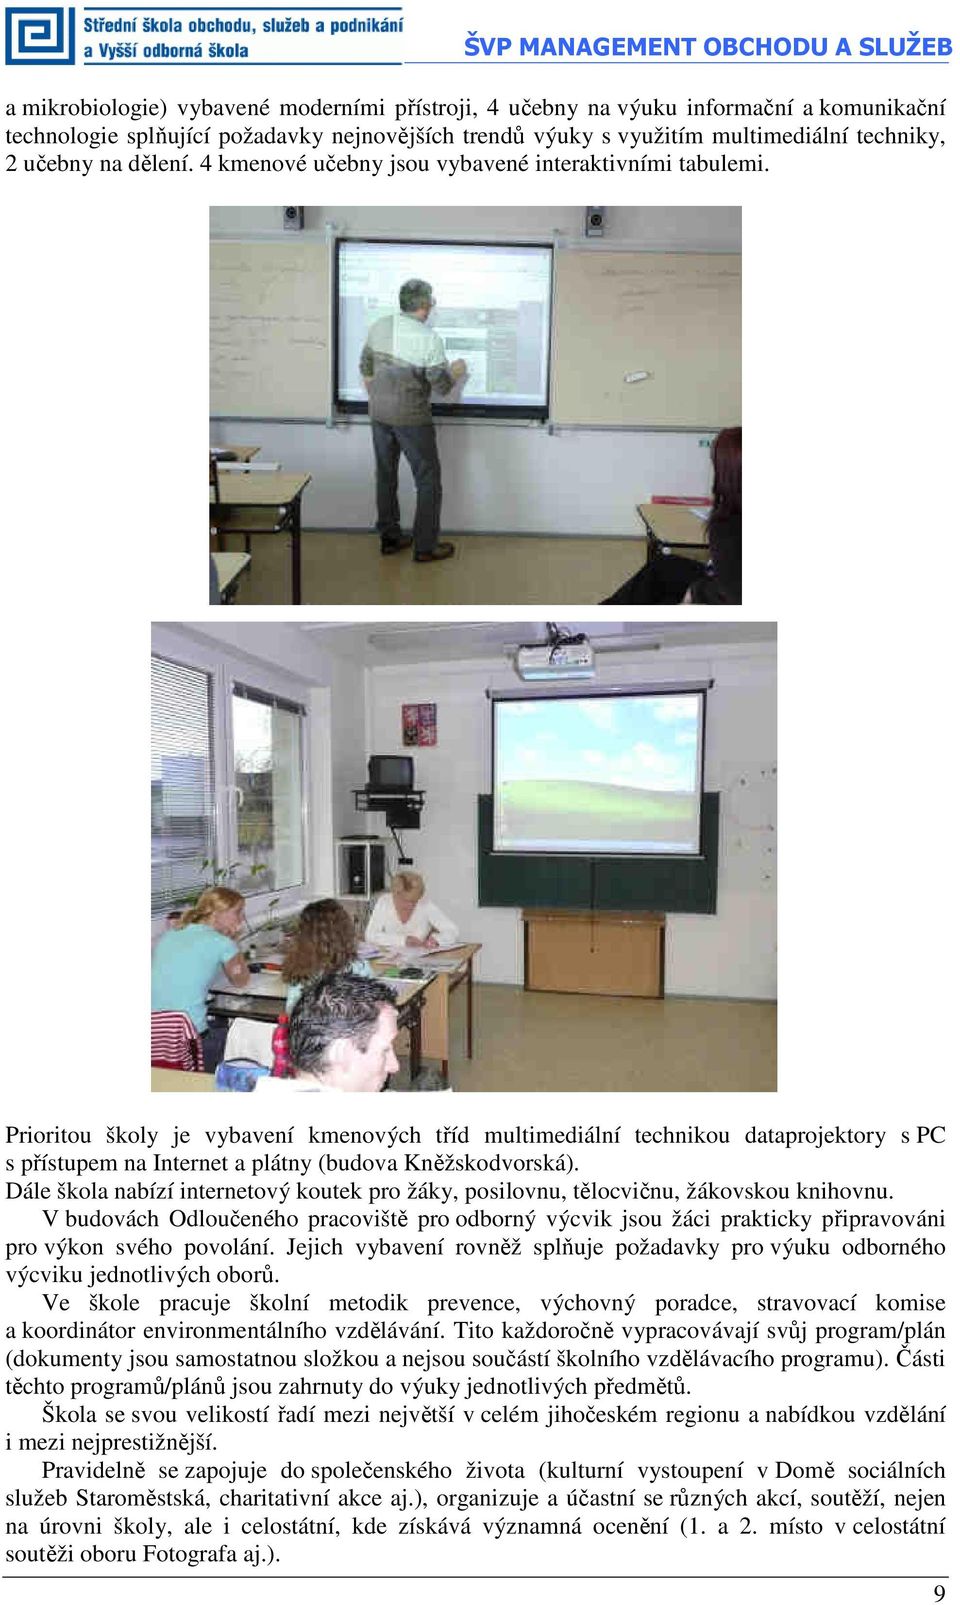 Prioritou školy je vybavení kmenových tříd multimediální technikou dataprojektory s PC s přístupem na Internet a plátny (budova Kněžskodvorská).